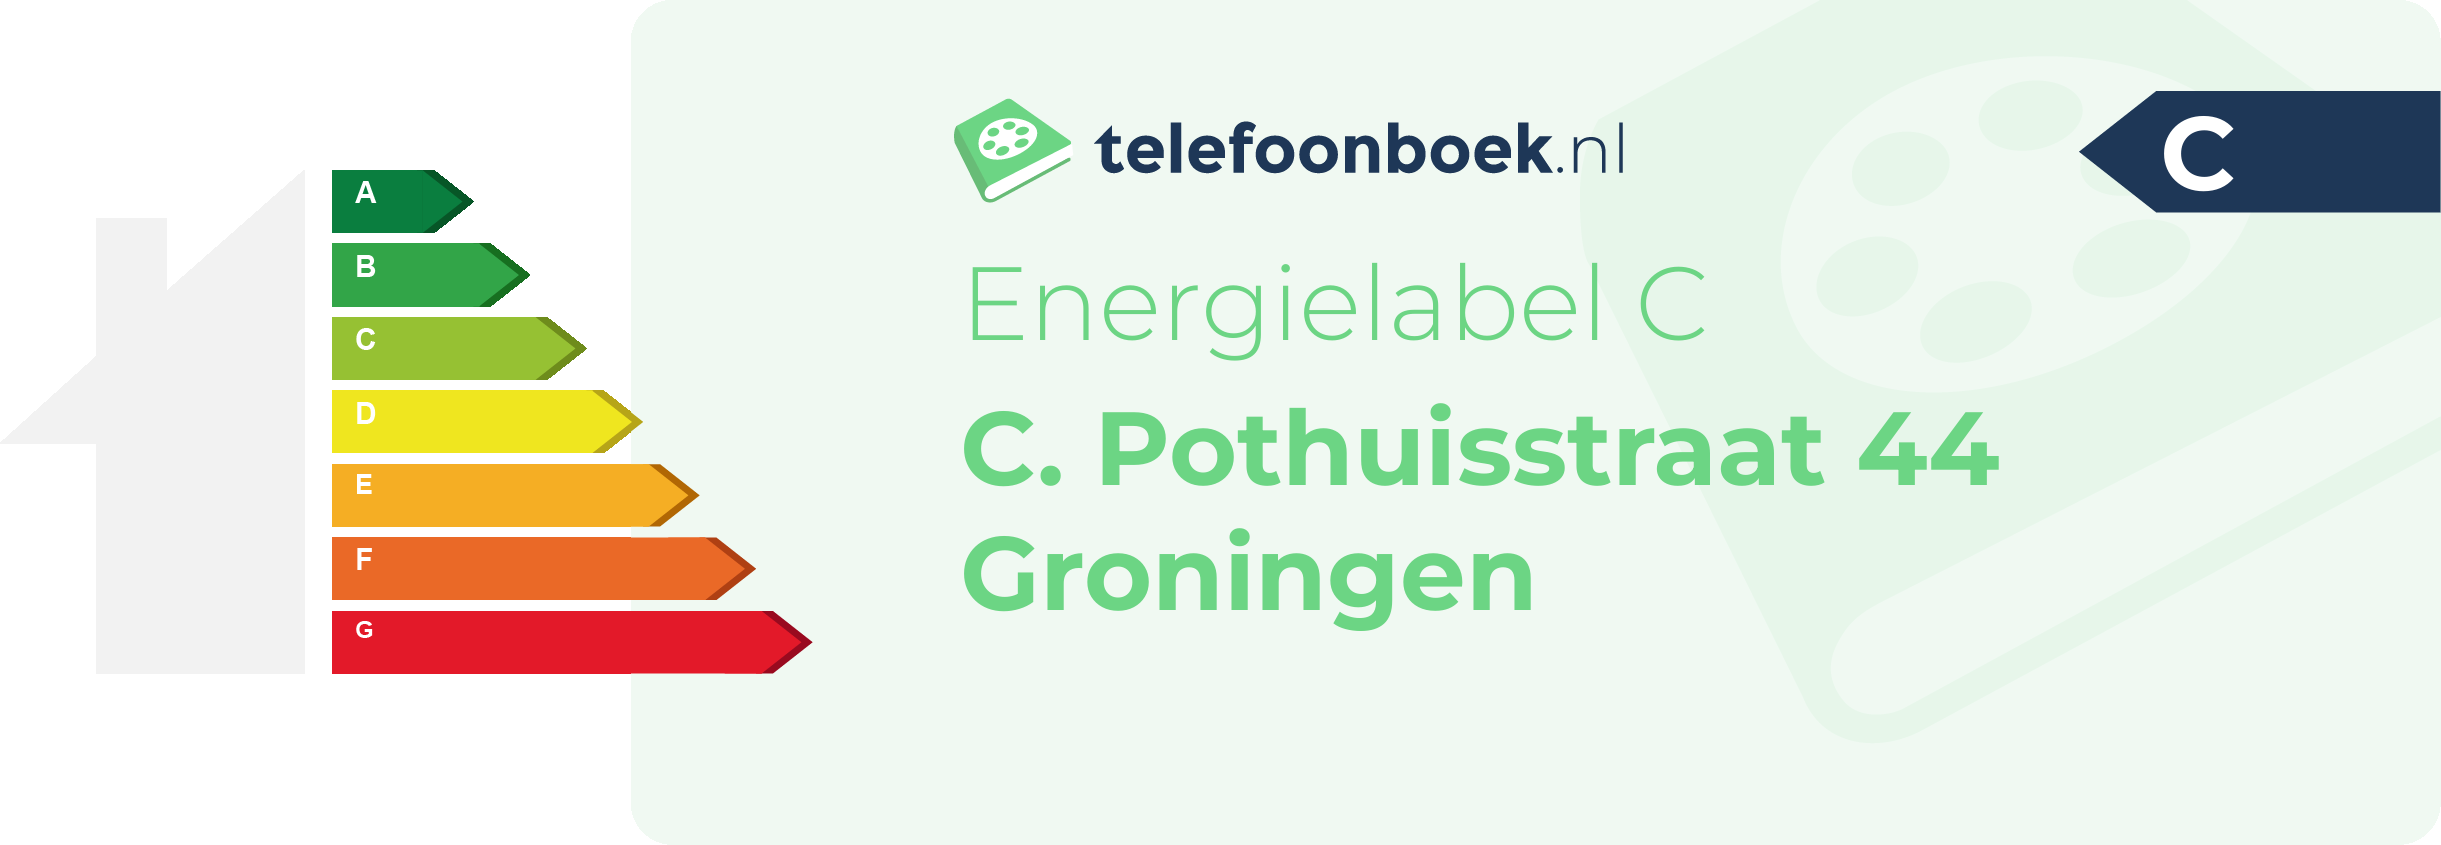 Energielabel C. Pothuisstraat 44 Groningen